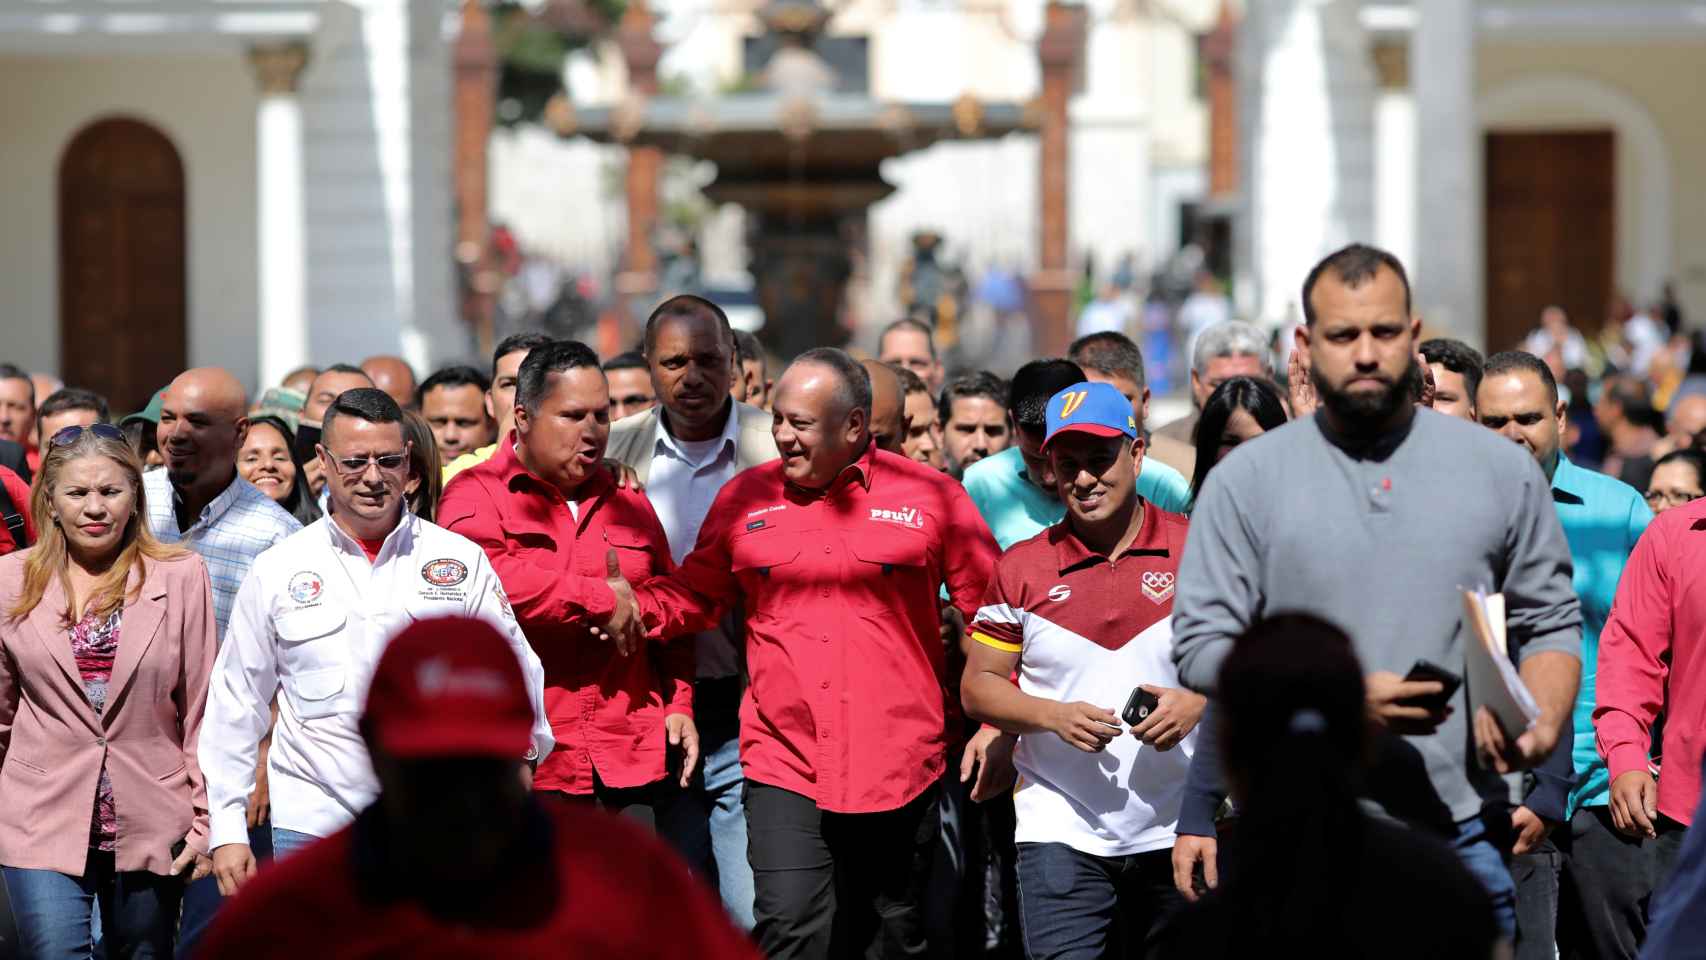 Diosdado Cabello, número dos del régimen chavista y buscado en EEUU por narcotráfico, lidera una marcha a favor ed Maduro en caracas.